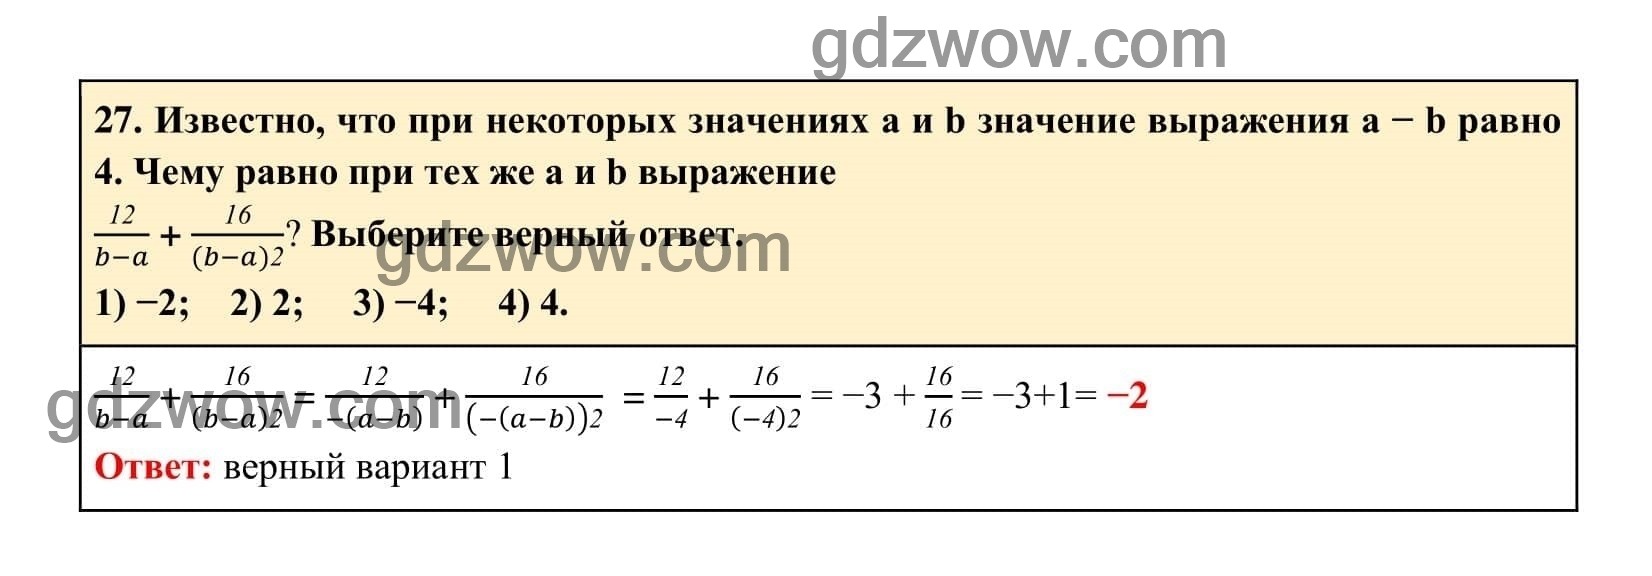 Упражнение 27 - ГДЗ по Алгебре 7 класс Учебник Макарычев (решебник) - GDZwow